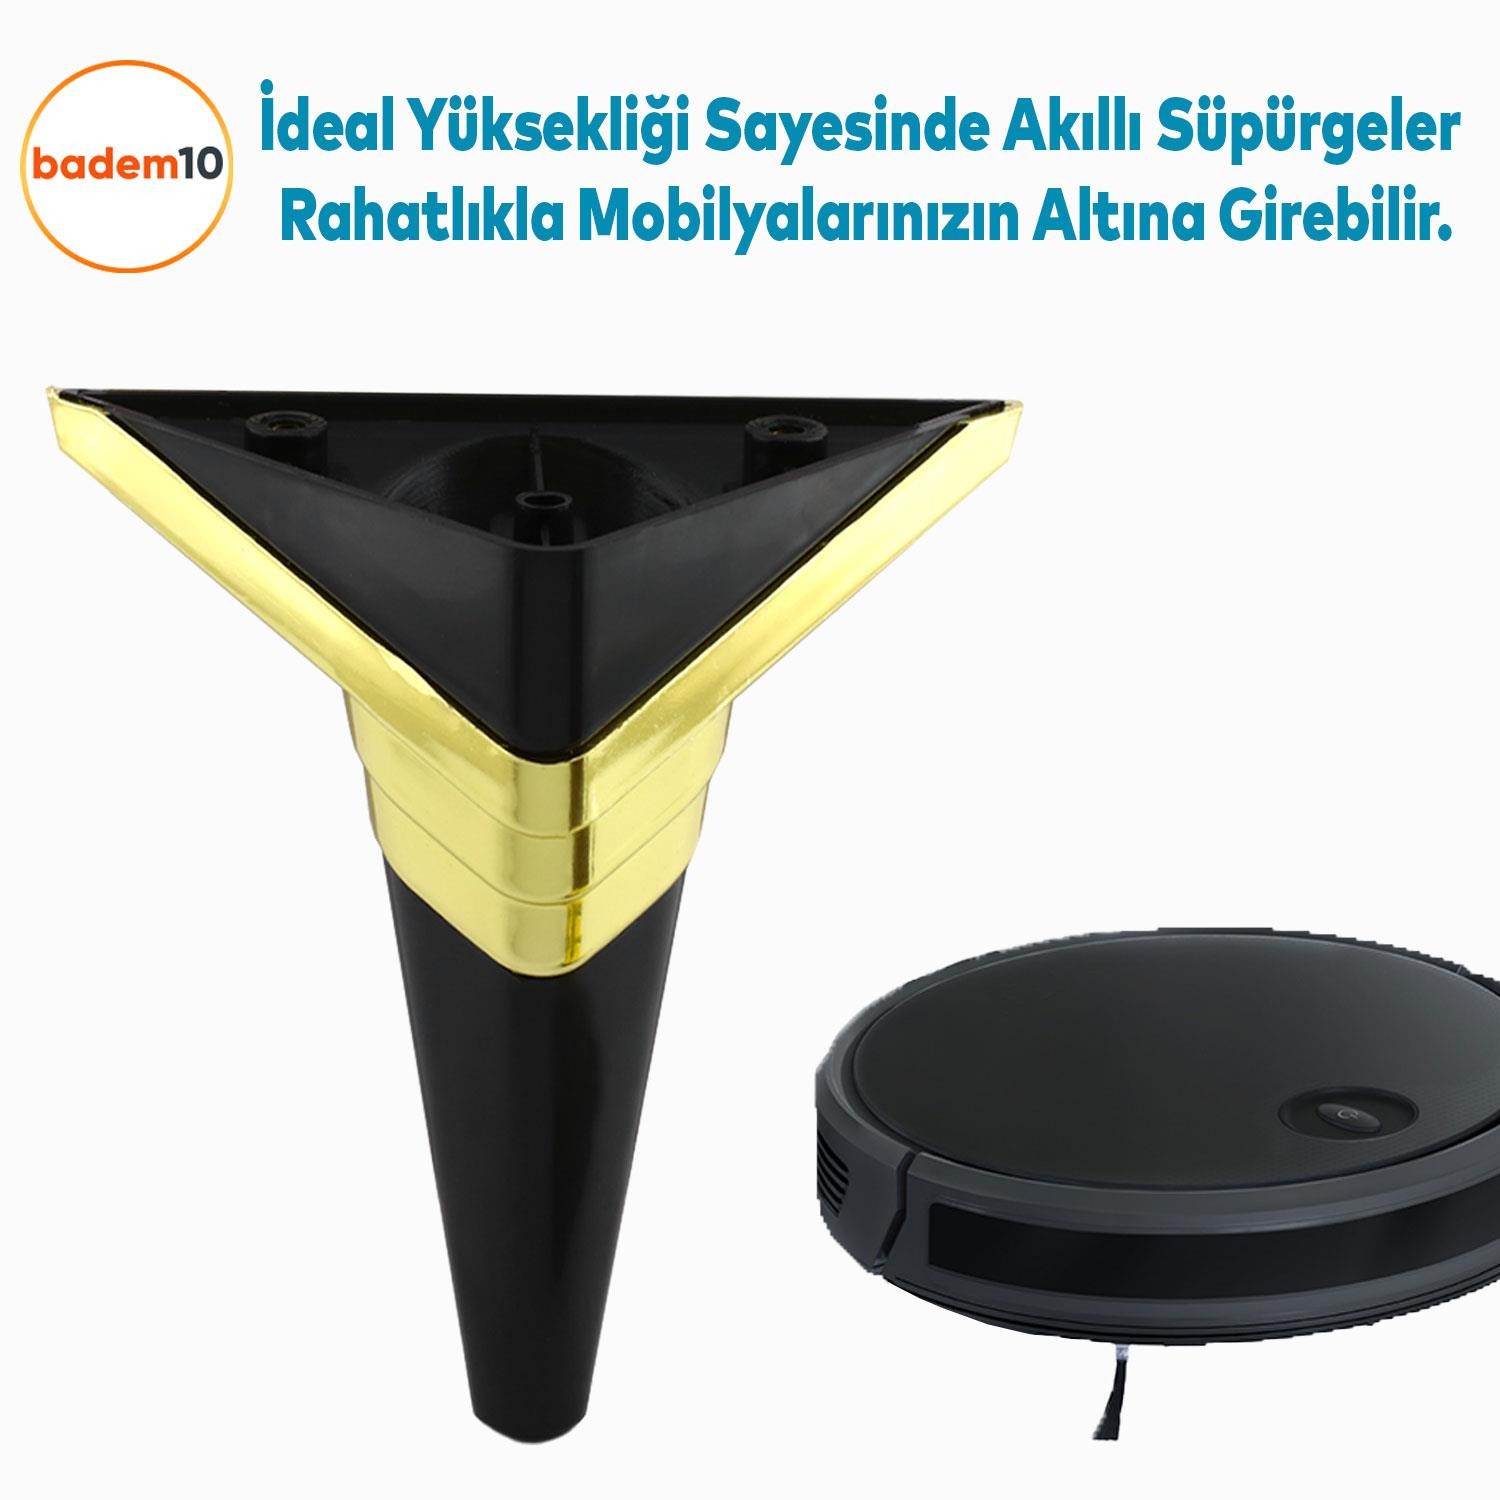 Golden Köşe Lüks Mobilya Kanepe Sehpa TV Ünitesi Koltuk Ayağı Baza Ayakları Siyah Altın 14 cm